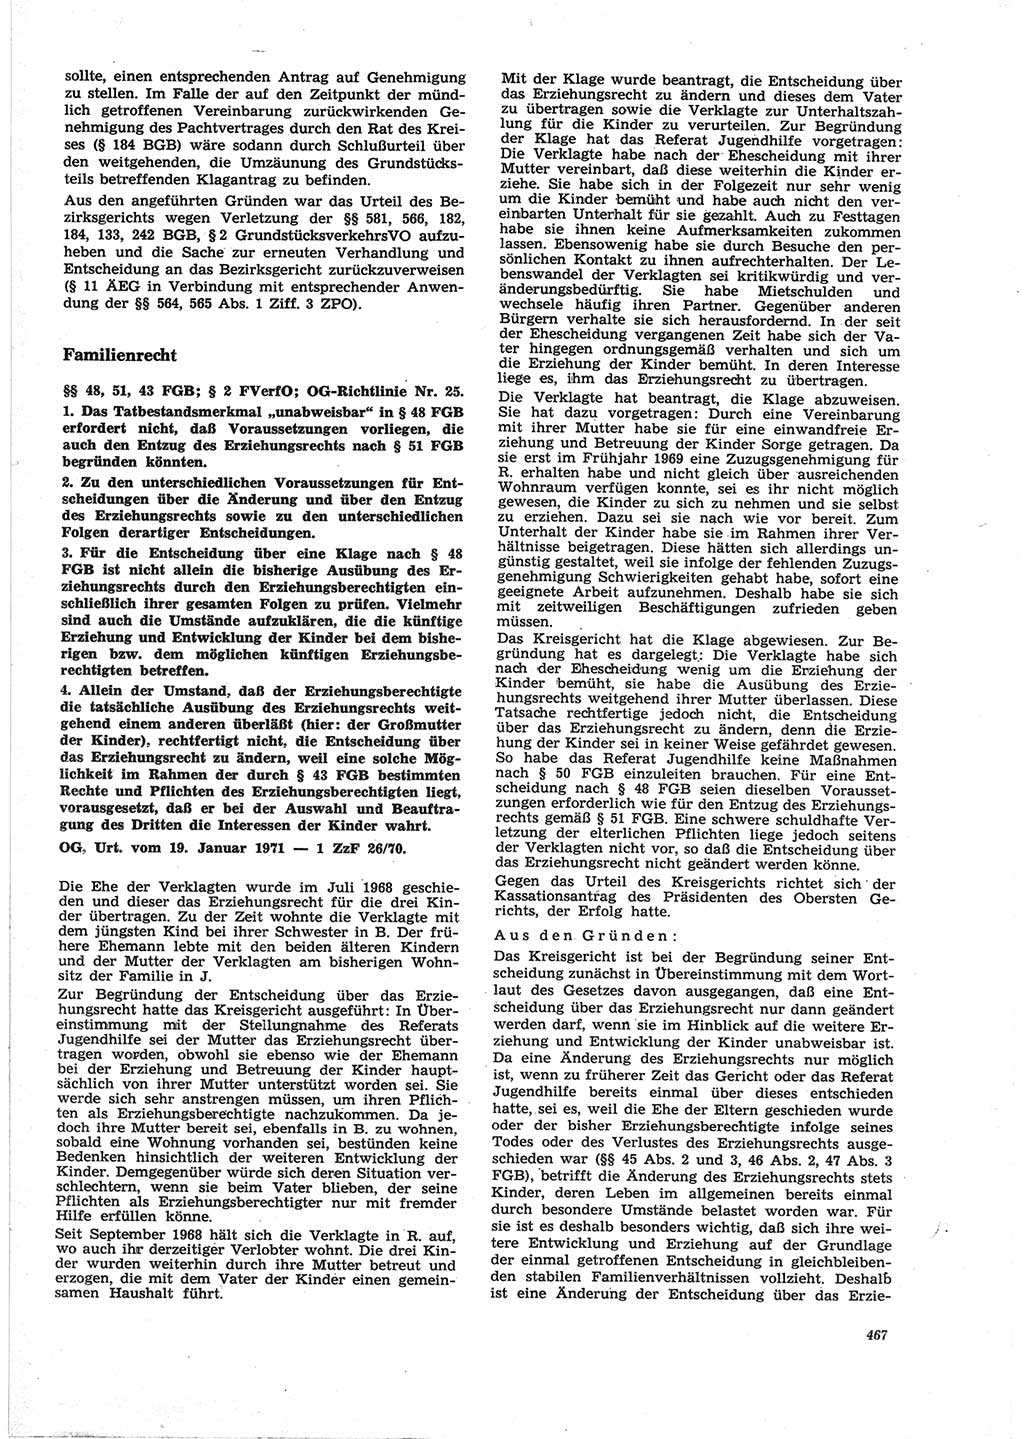 Neue Justiz (NJ), Zeitschrift für Recht und Rechtswissenschaft [Deutsche Demokratische Republik (DDR)], 25. Jahrgang 1971, Seite 467 (NJ DDR 1971, S. 467)